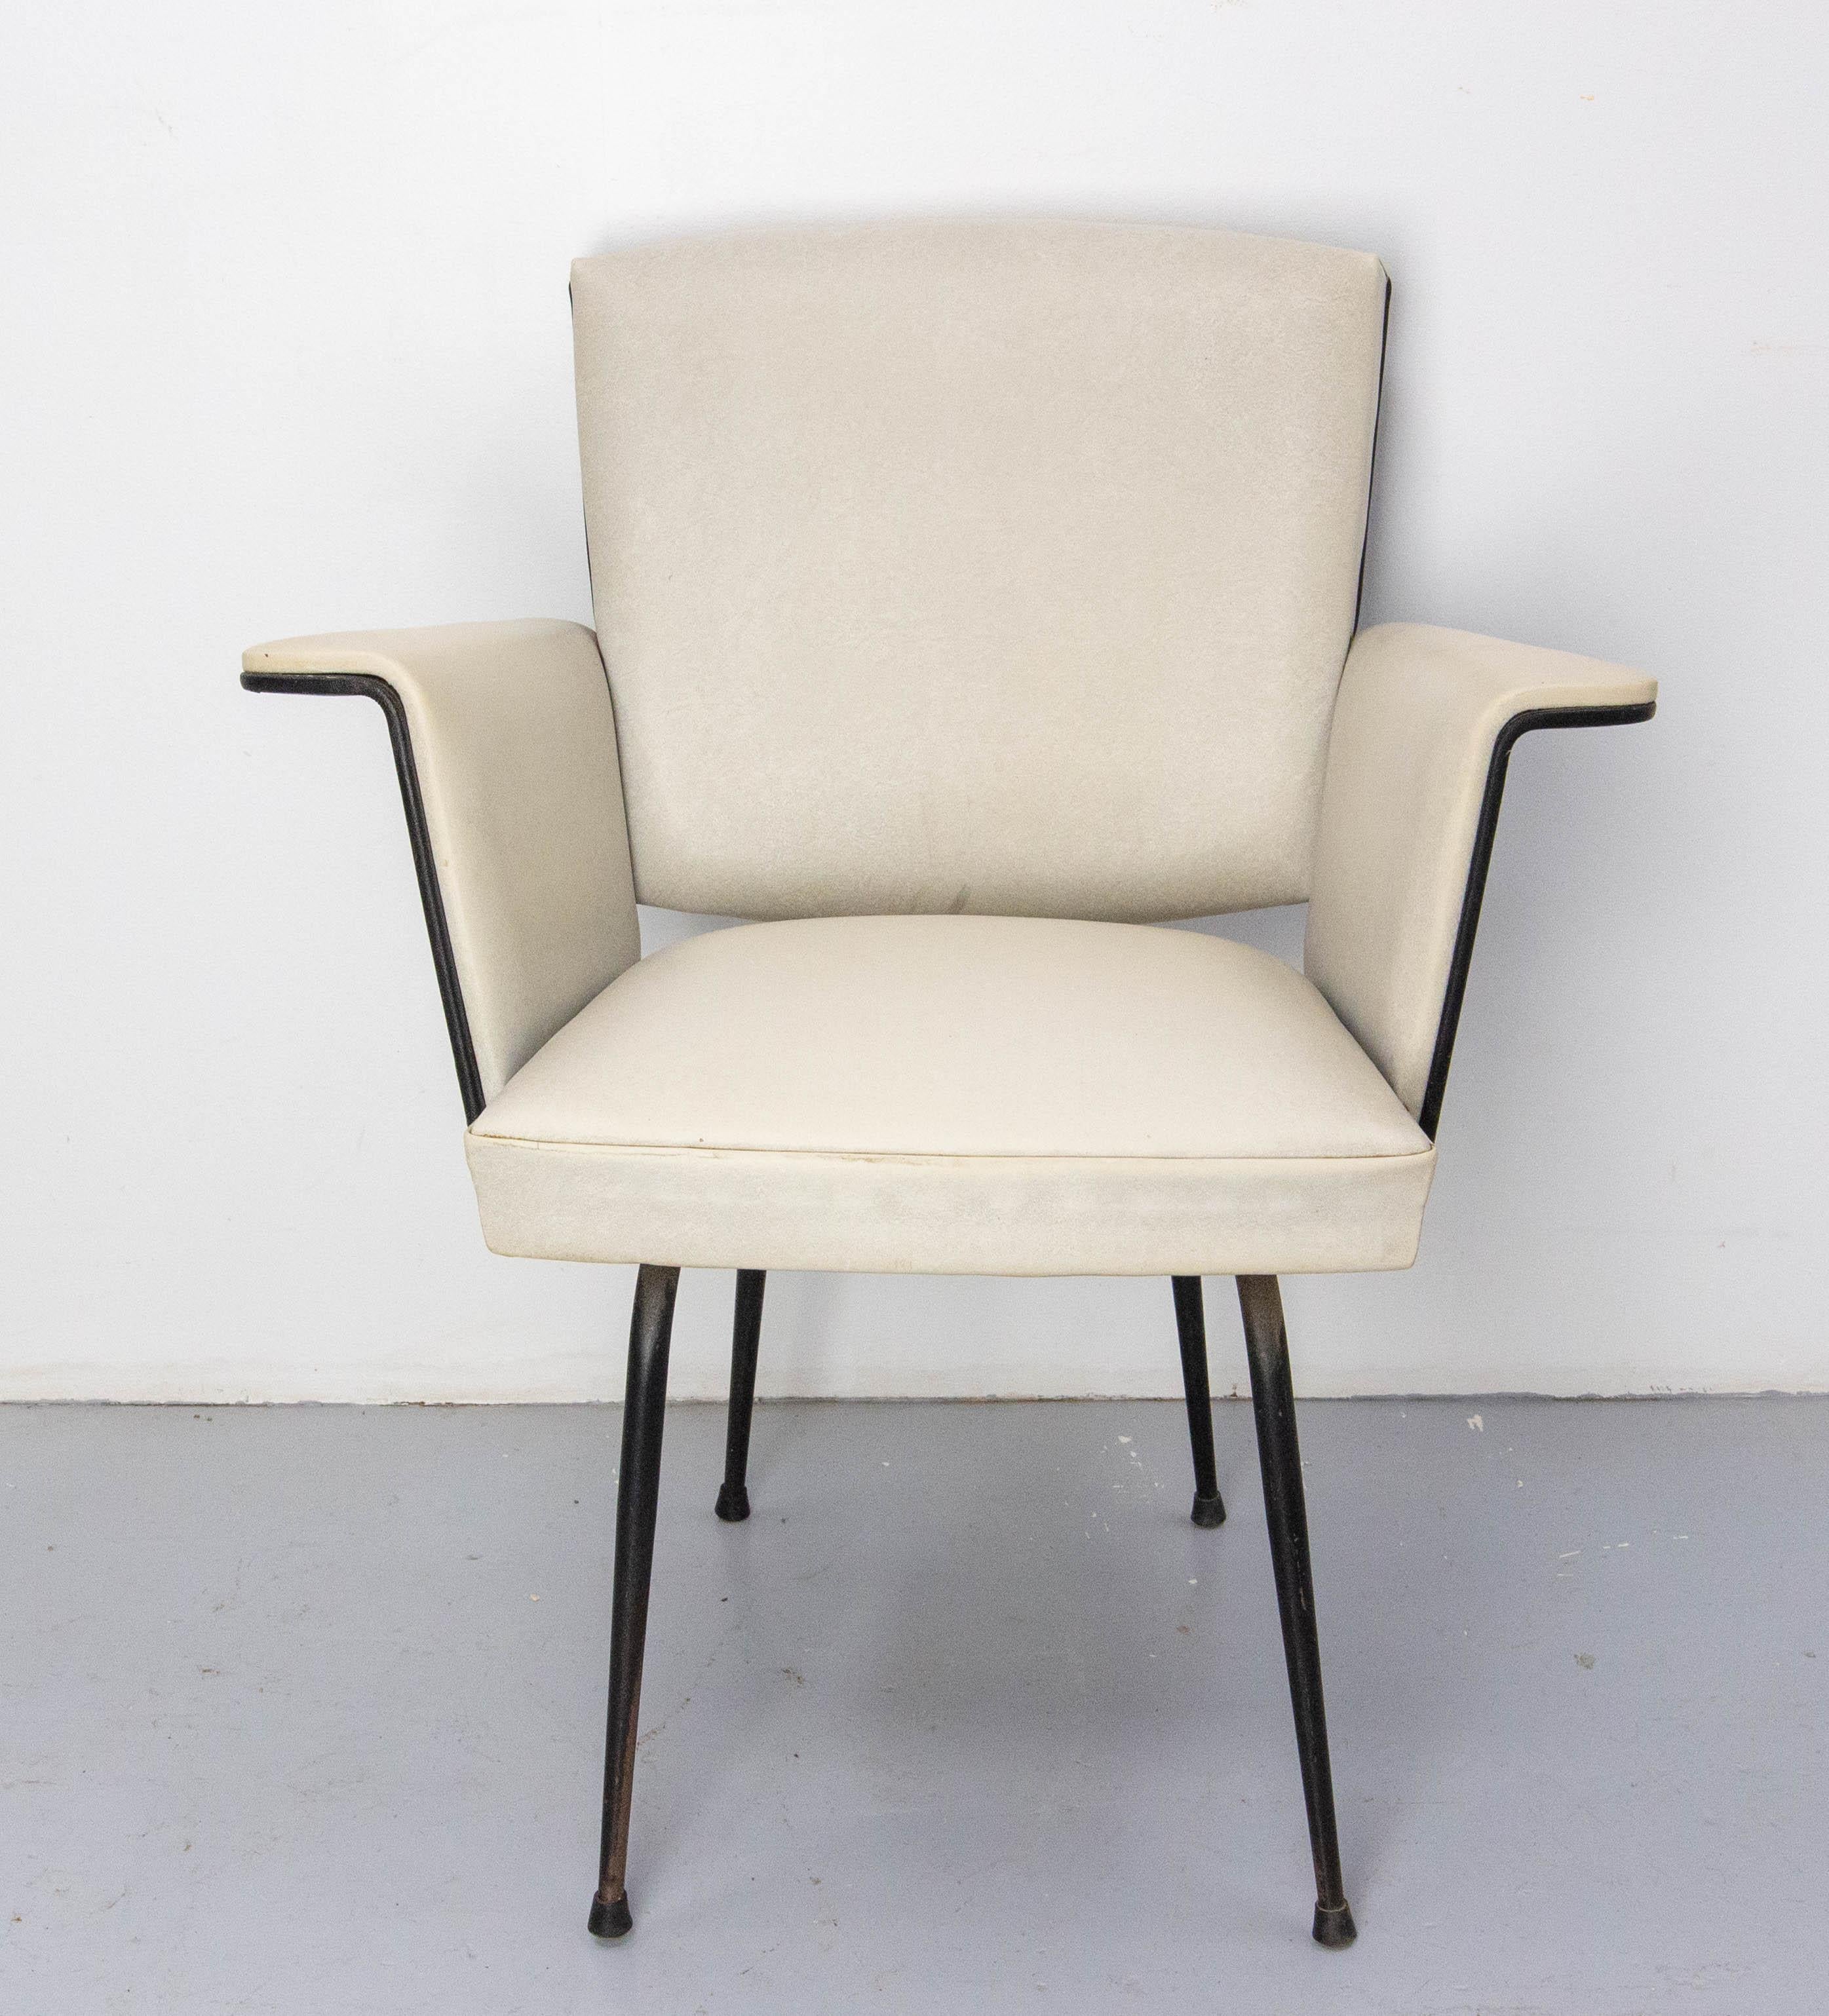 Französischer Stuhl in sehr hellem Grau und Schwarz aus der Mitte des 20. Jahrhunderts auf einem schwarz lackierten Sockel.
Guter Zustand mit einem Fleck auf dem Sitz (siehe letztes Foto)

Versand:
65 / 70 / 80 cm 9.7 kg.
    